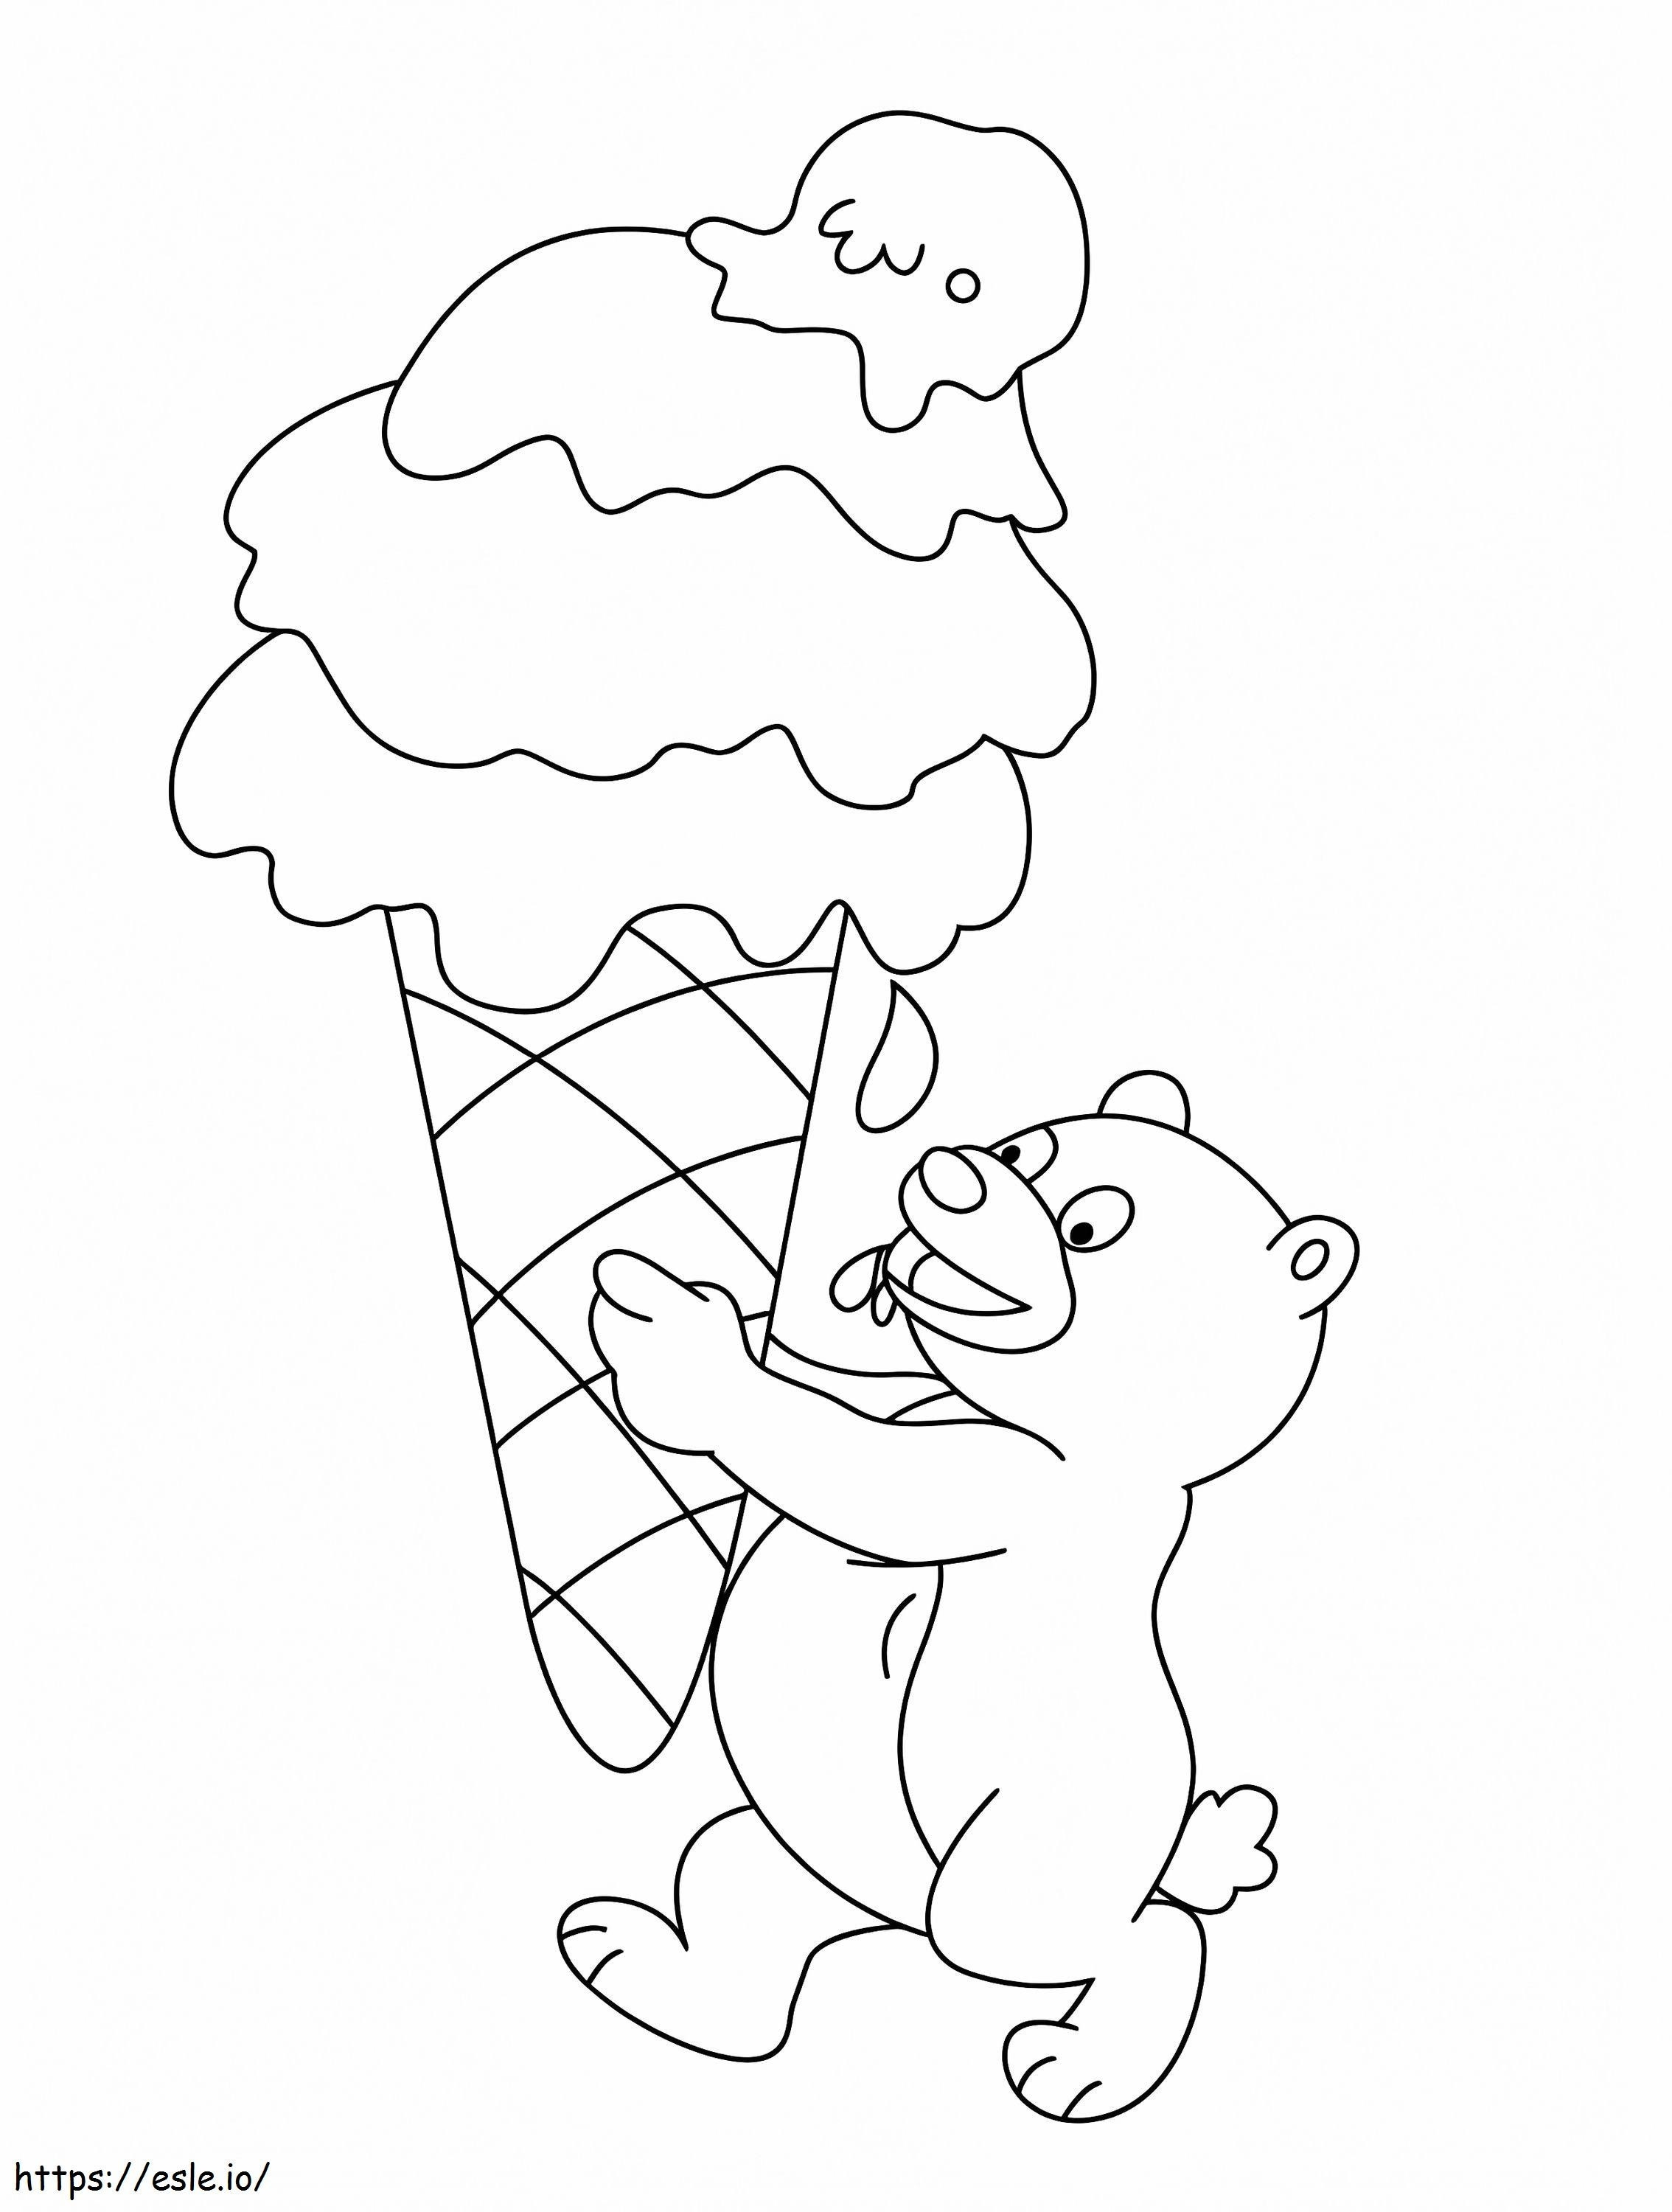 Urs cu înghețată mare de colorat